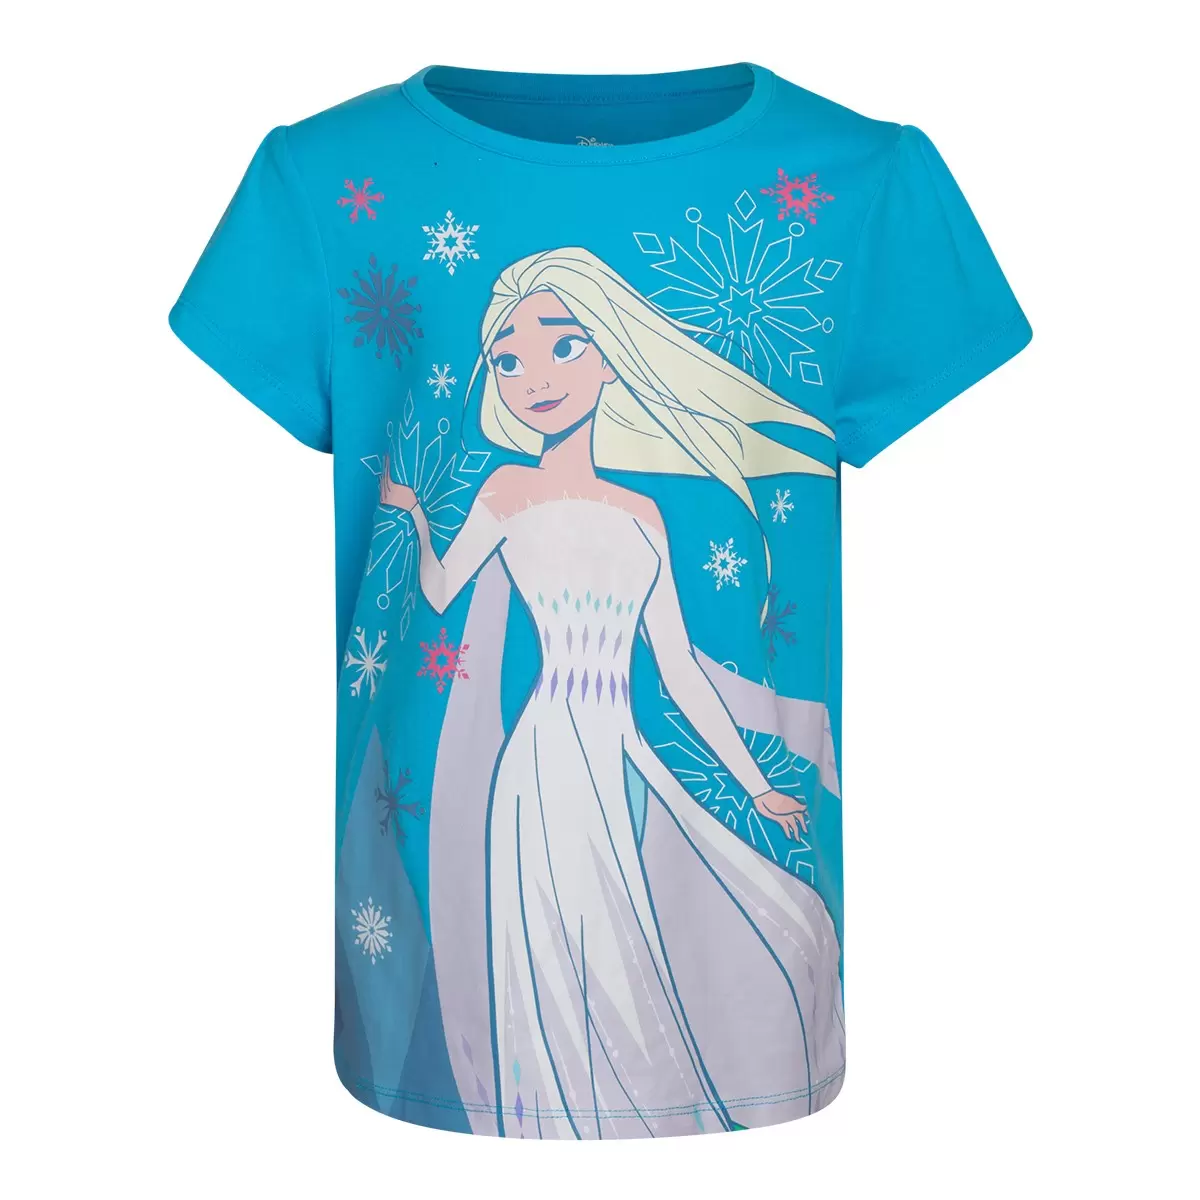 兒童卡通圖案短袖上衣四件組 Frozen 2 3T